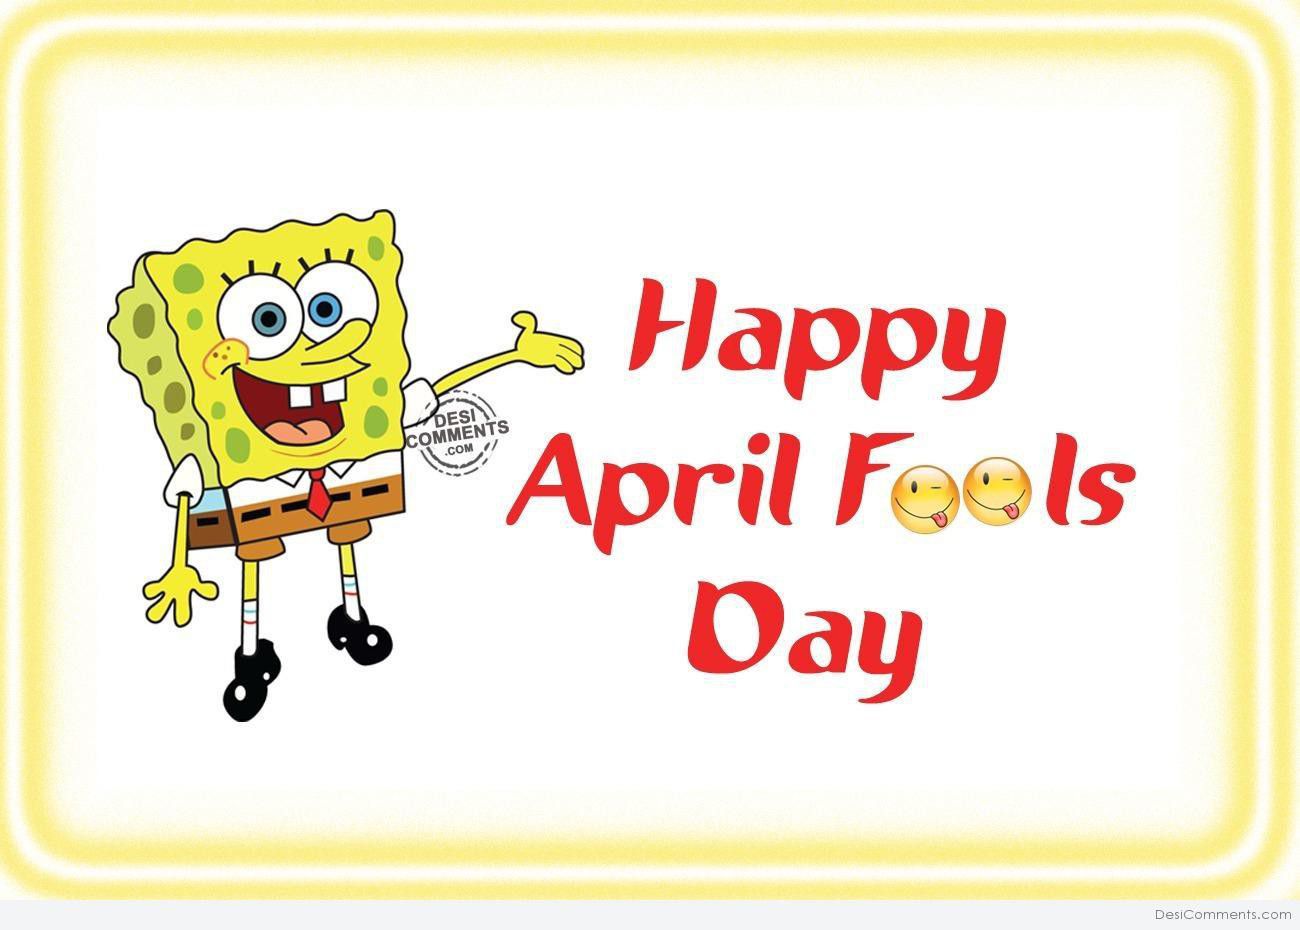 Happy April Fools. April Fool's Day. April Fool's Day jokes. Happy April Fool's Day. April feeling